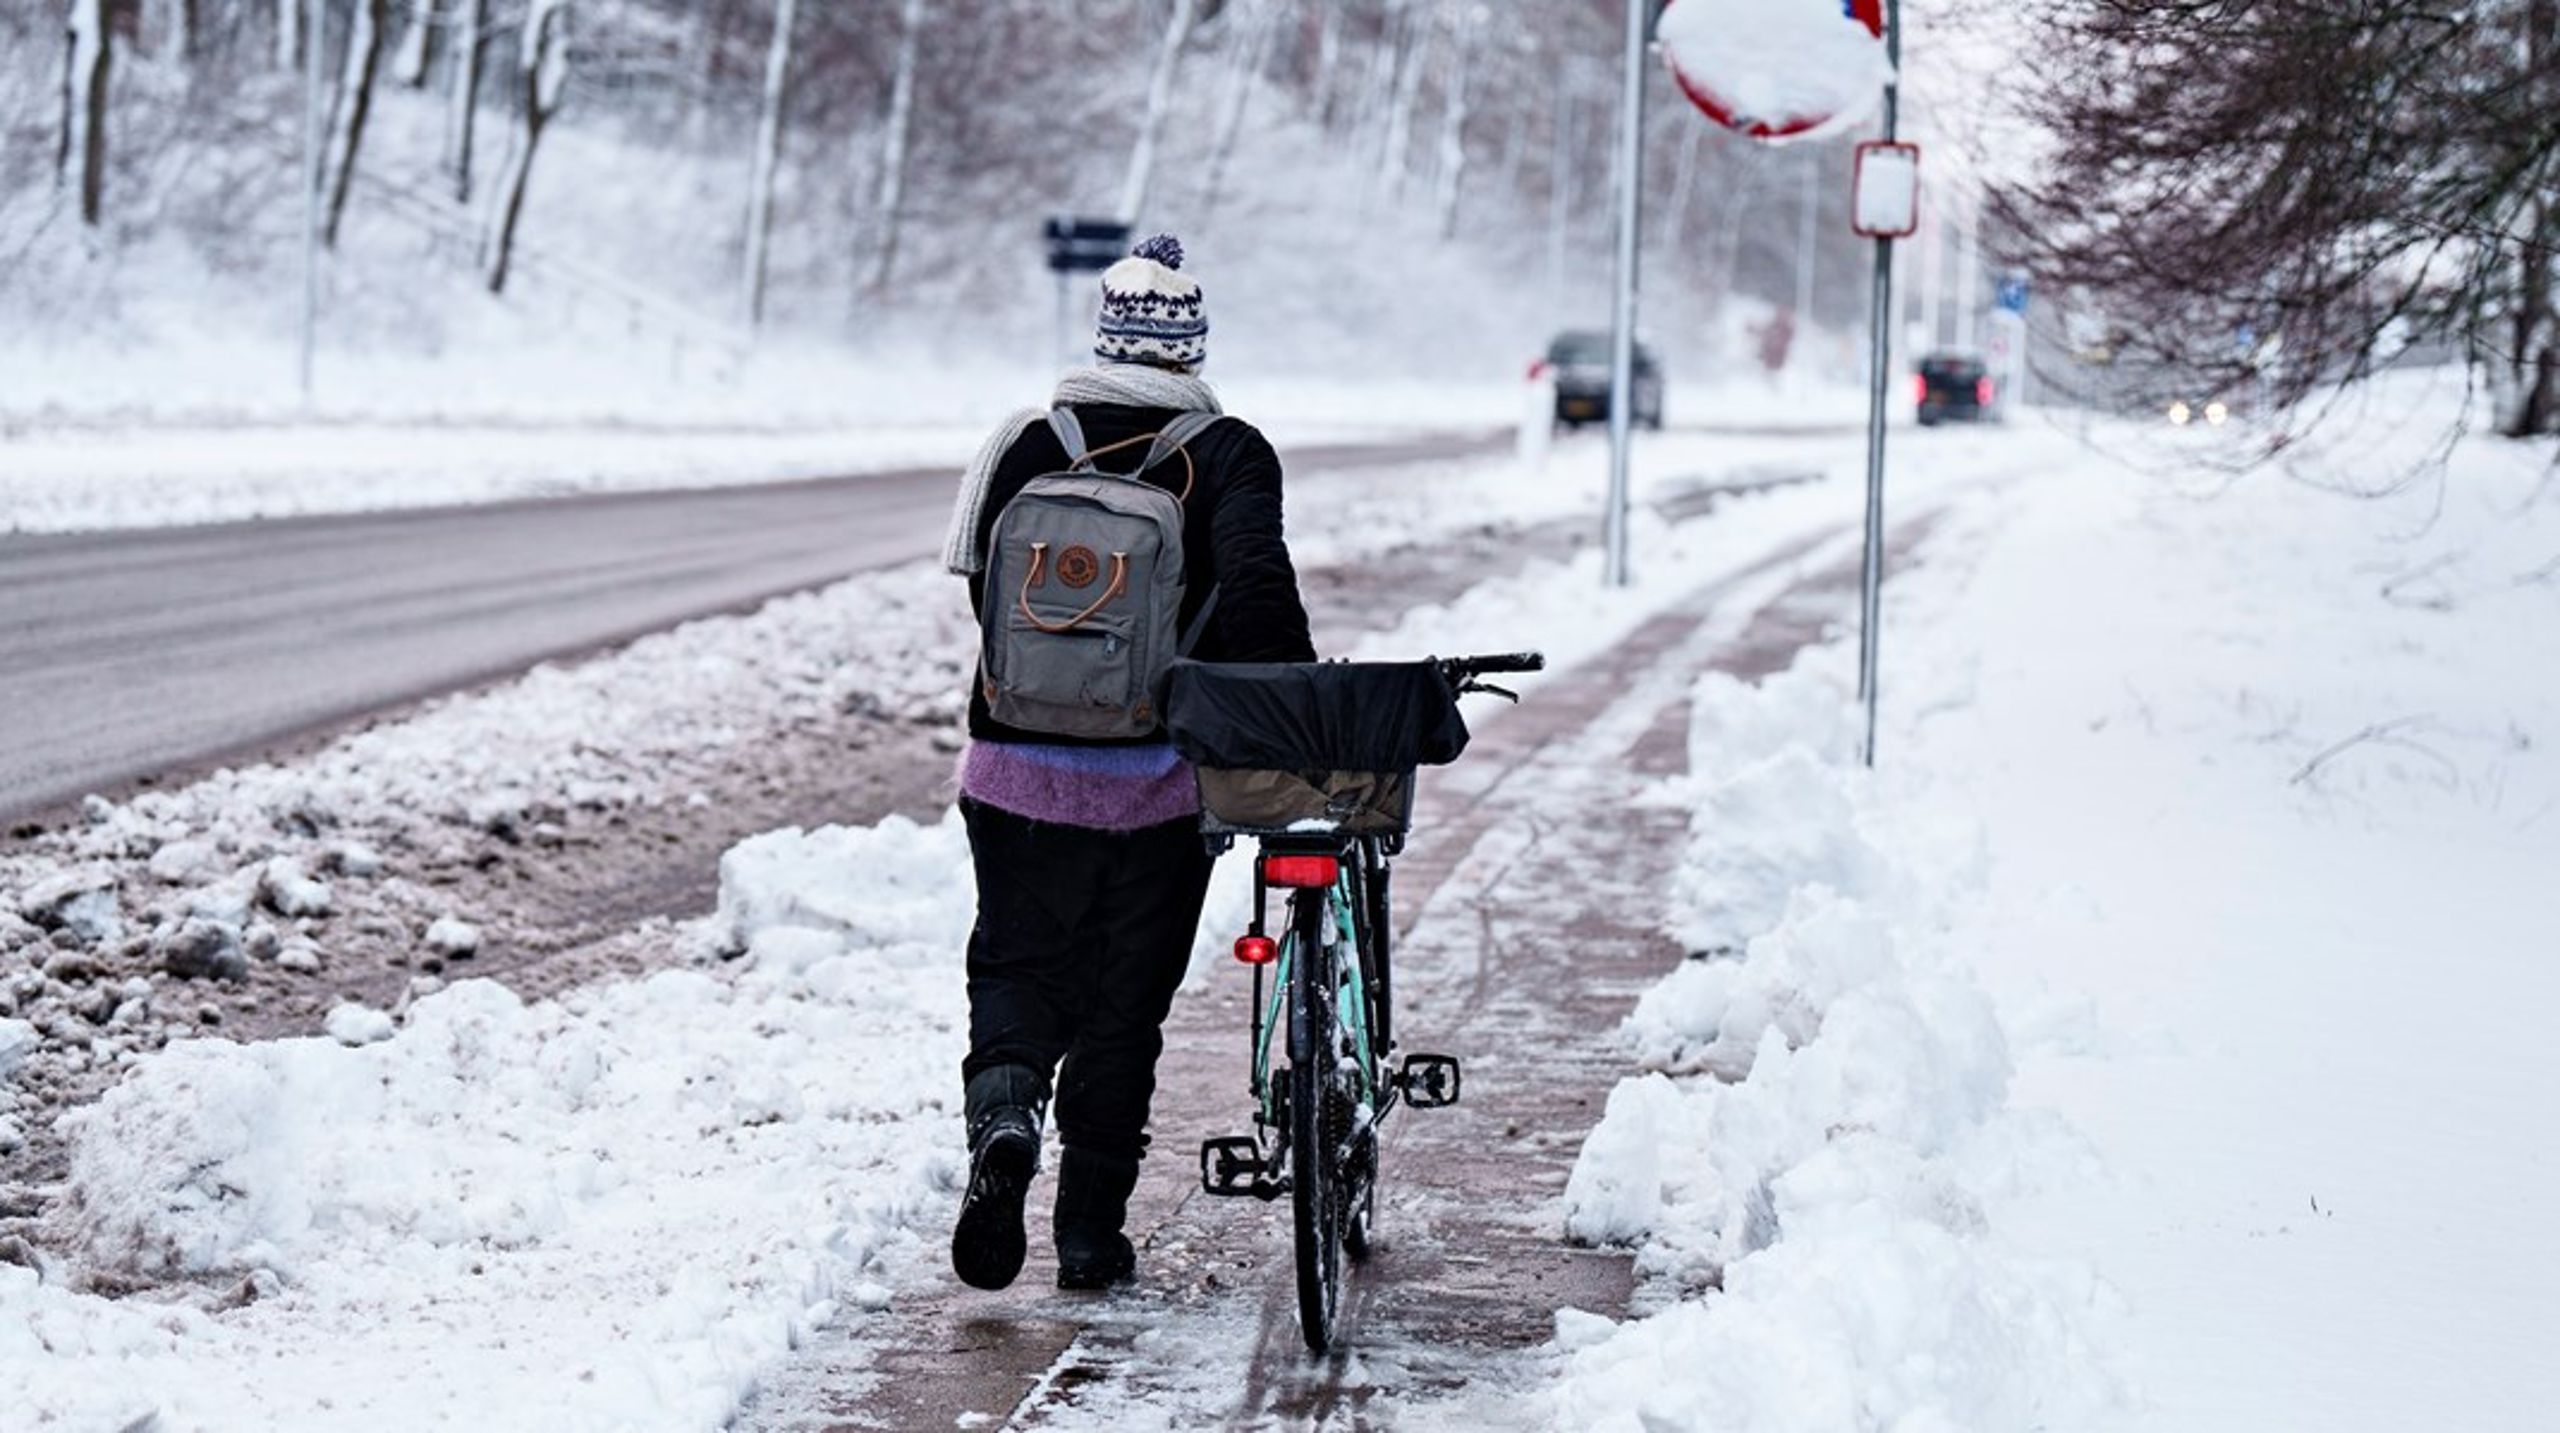 Cyklisters fremkommelighed og sikkerhed skal øges. Giv vejmyndigheden det fulde ansvar for færdselsmæssige bestemmelser, som indvirker på vejens udnyttelse eller indretning, skriver Jens Peter Hansen.